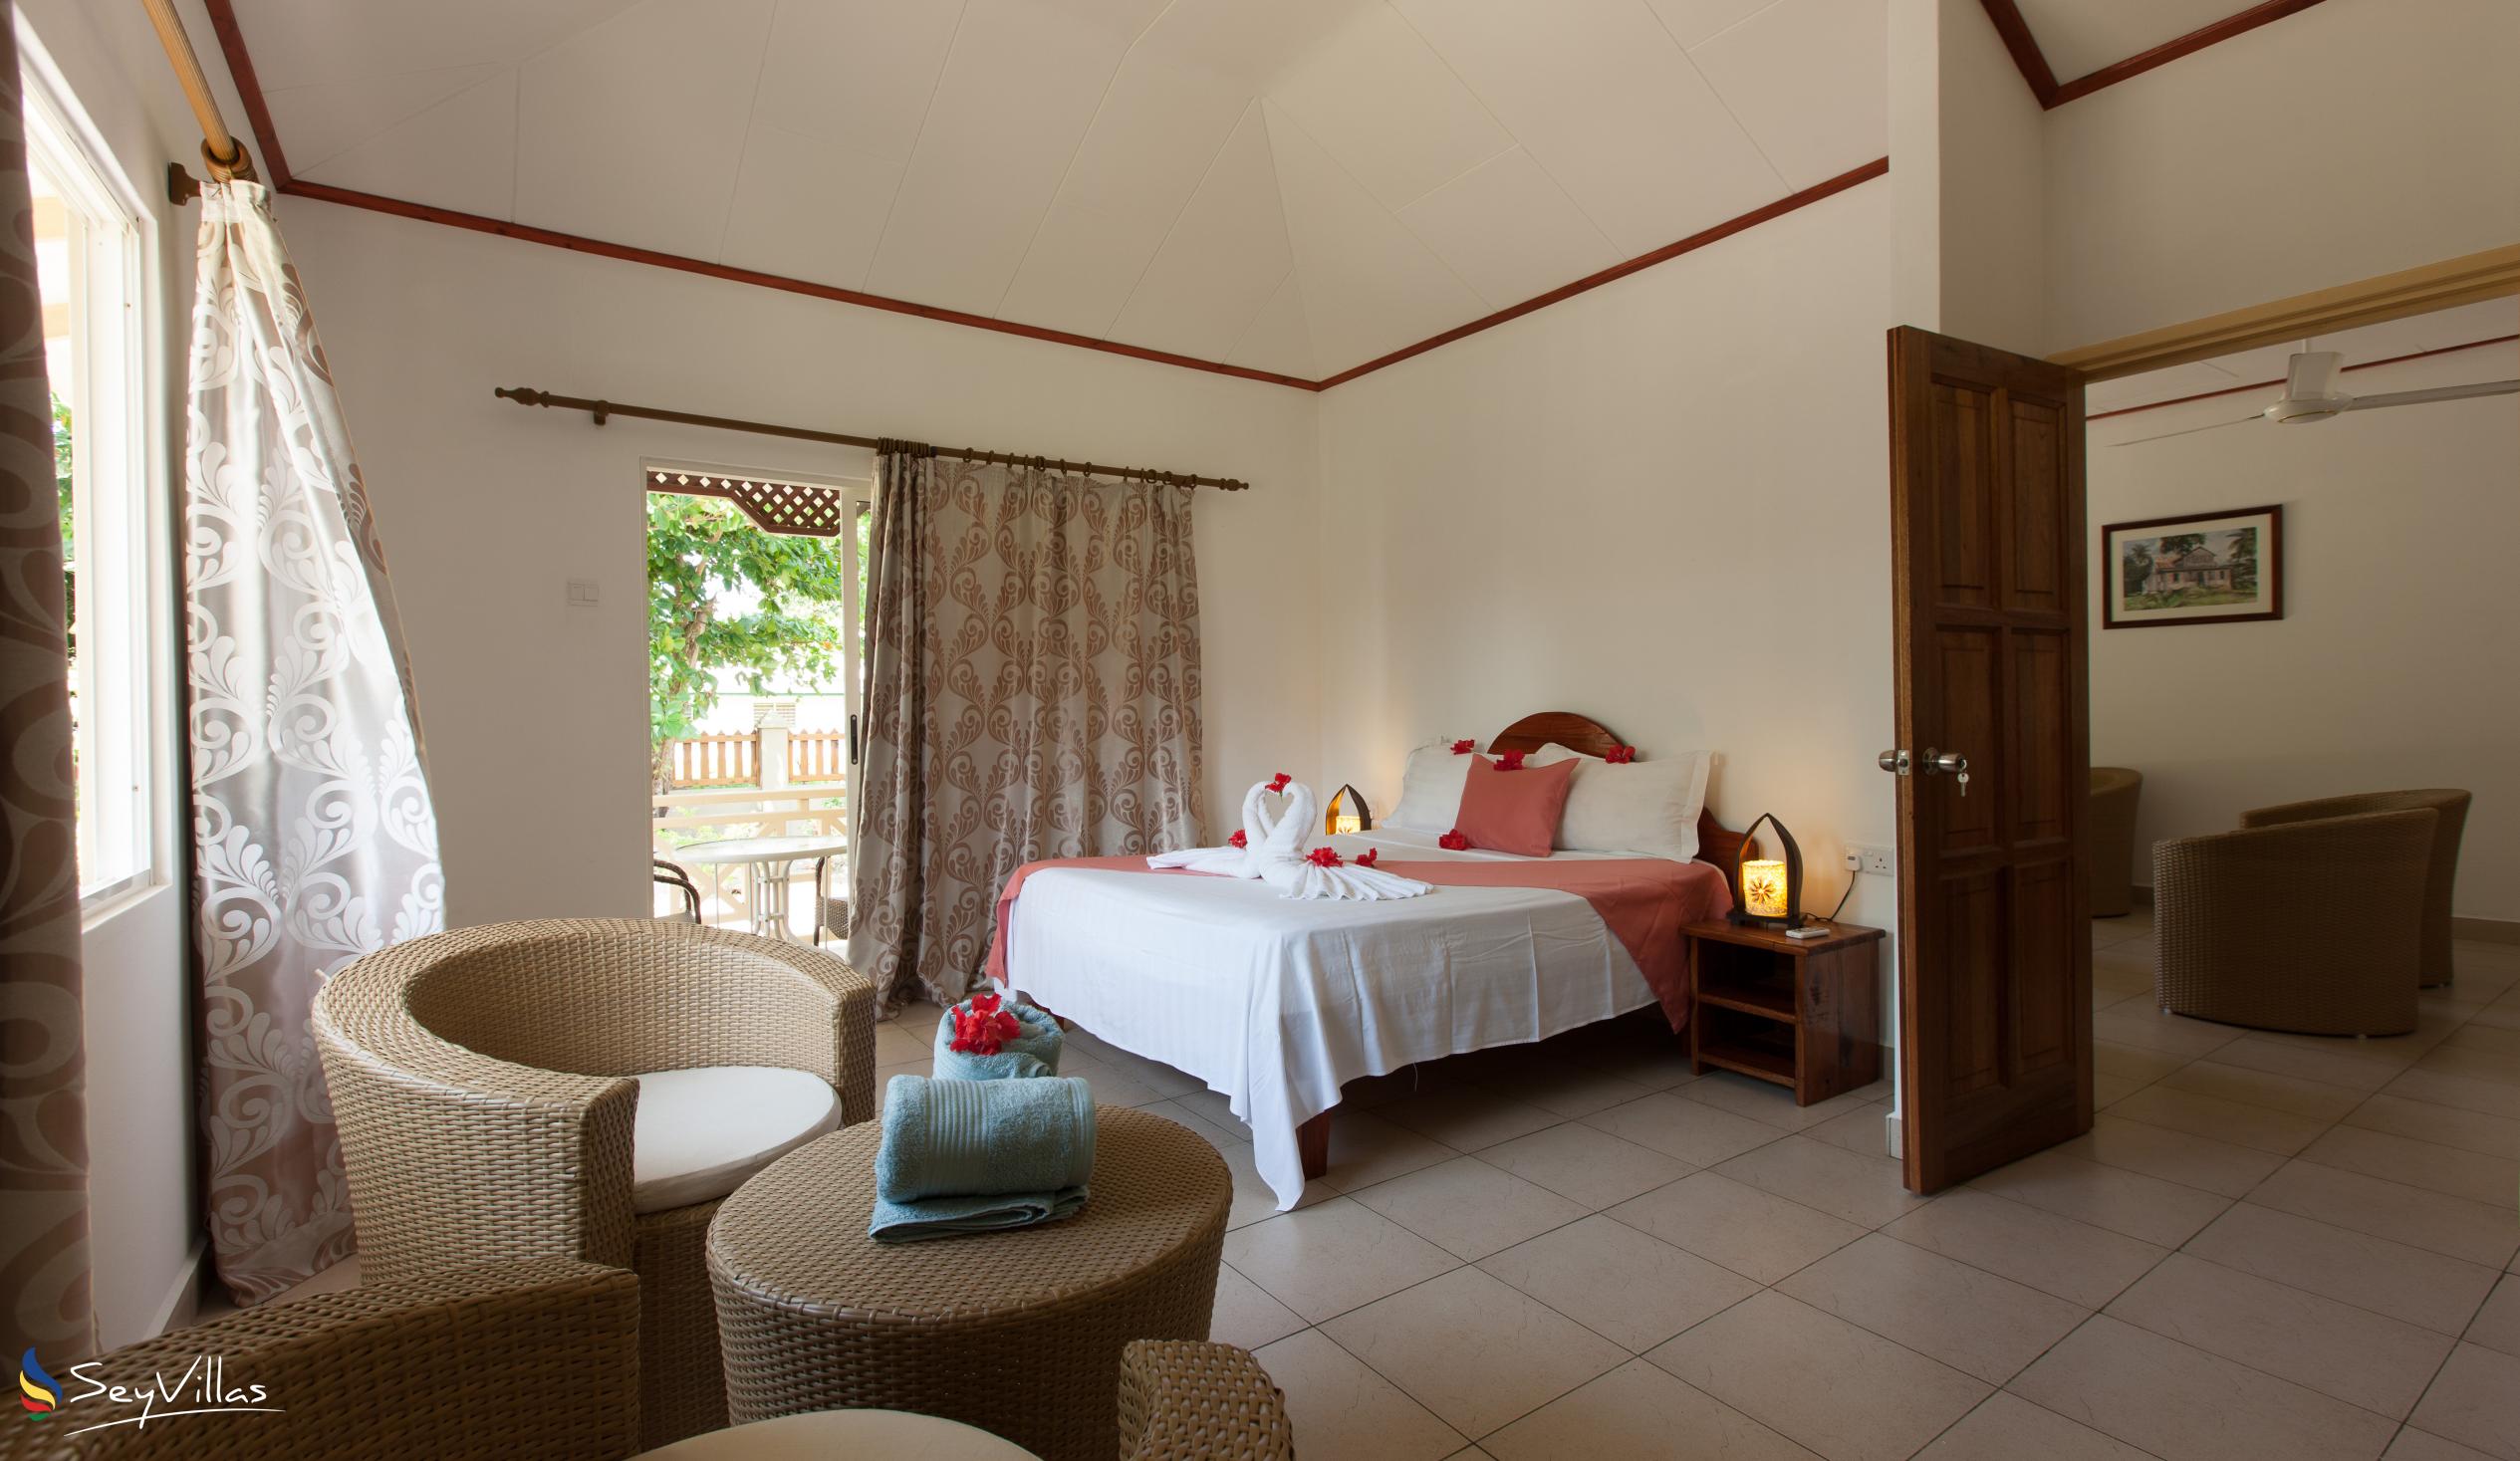 Foto 15: Hostellerie La Digue - Chalet 3 chambres - La Digue (Seychelles)